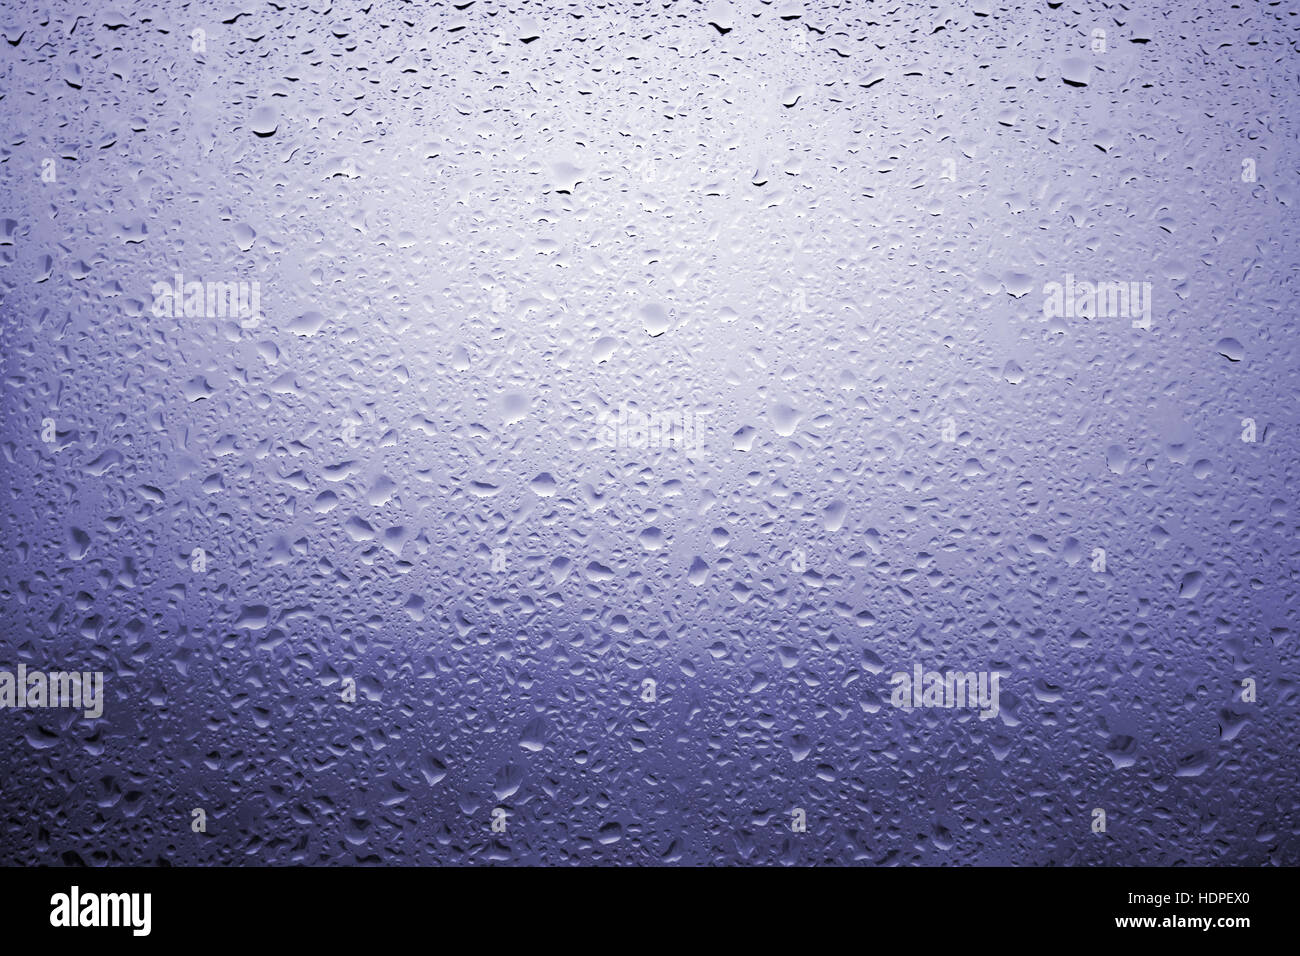 Gouttes de pluie sur une vitre de fenêtre avec paysage très diffuse de couleur bleu violacé Banque D'Images